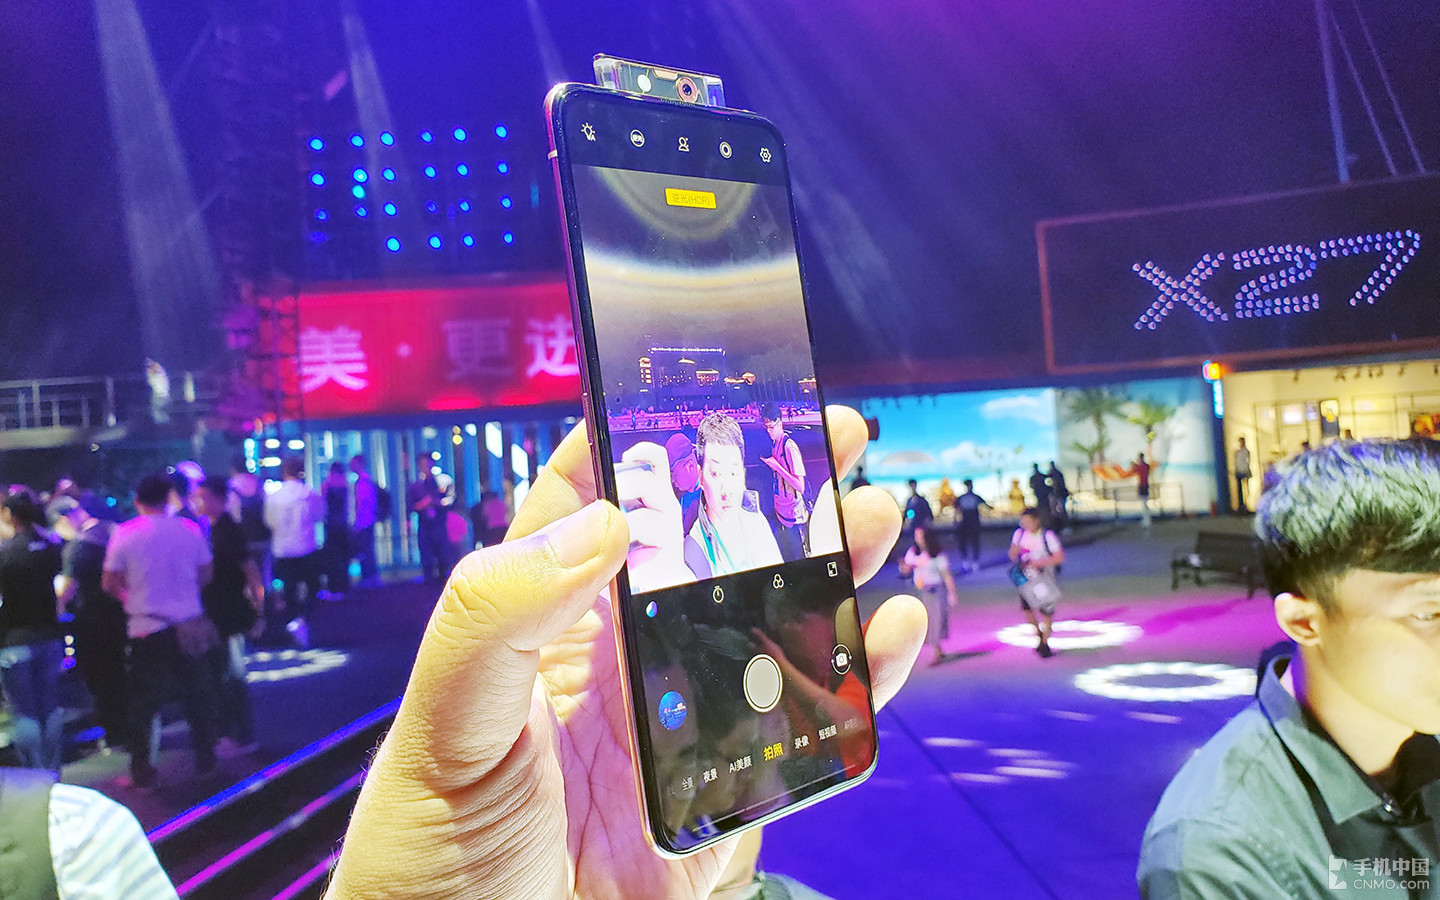 Vivo X27 và X27 Pro
ra mắt với camera selfie thò thụt, 3 camera sau, Snapdragon
710, 8GB RAM, giá 12.5 triệu